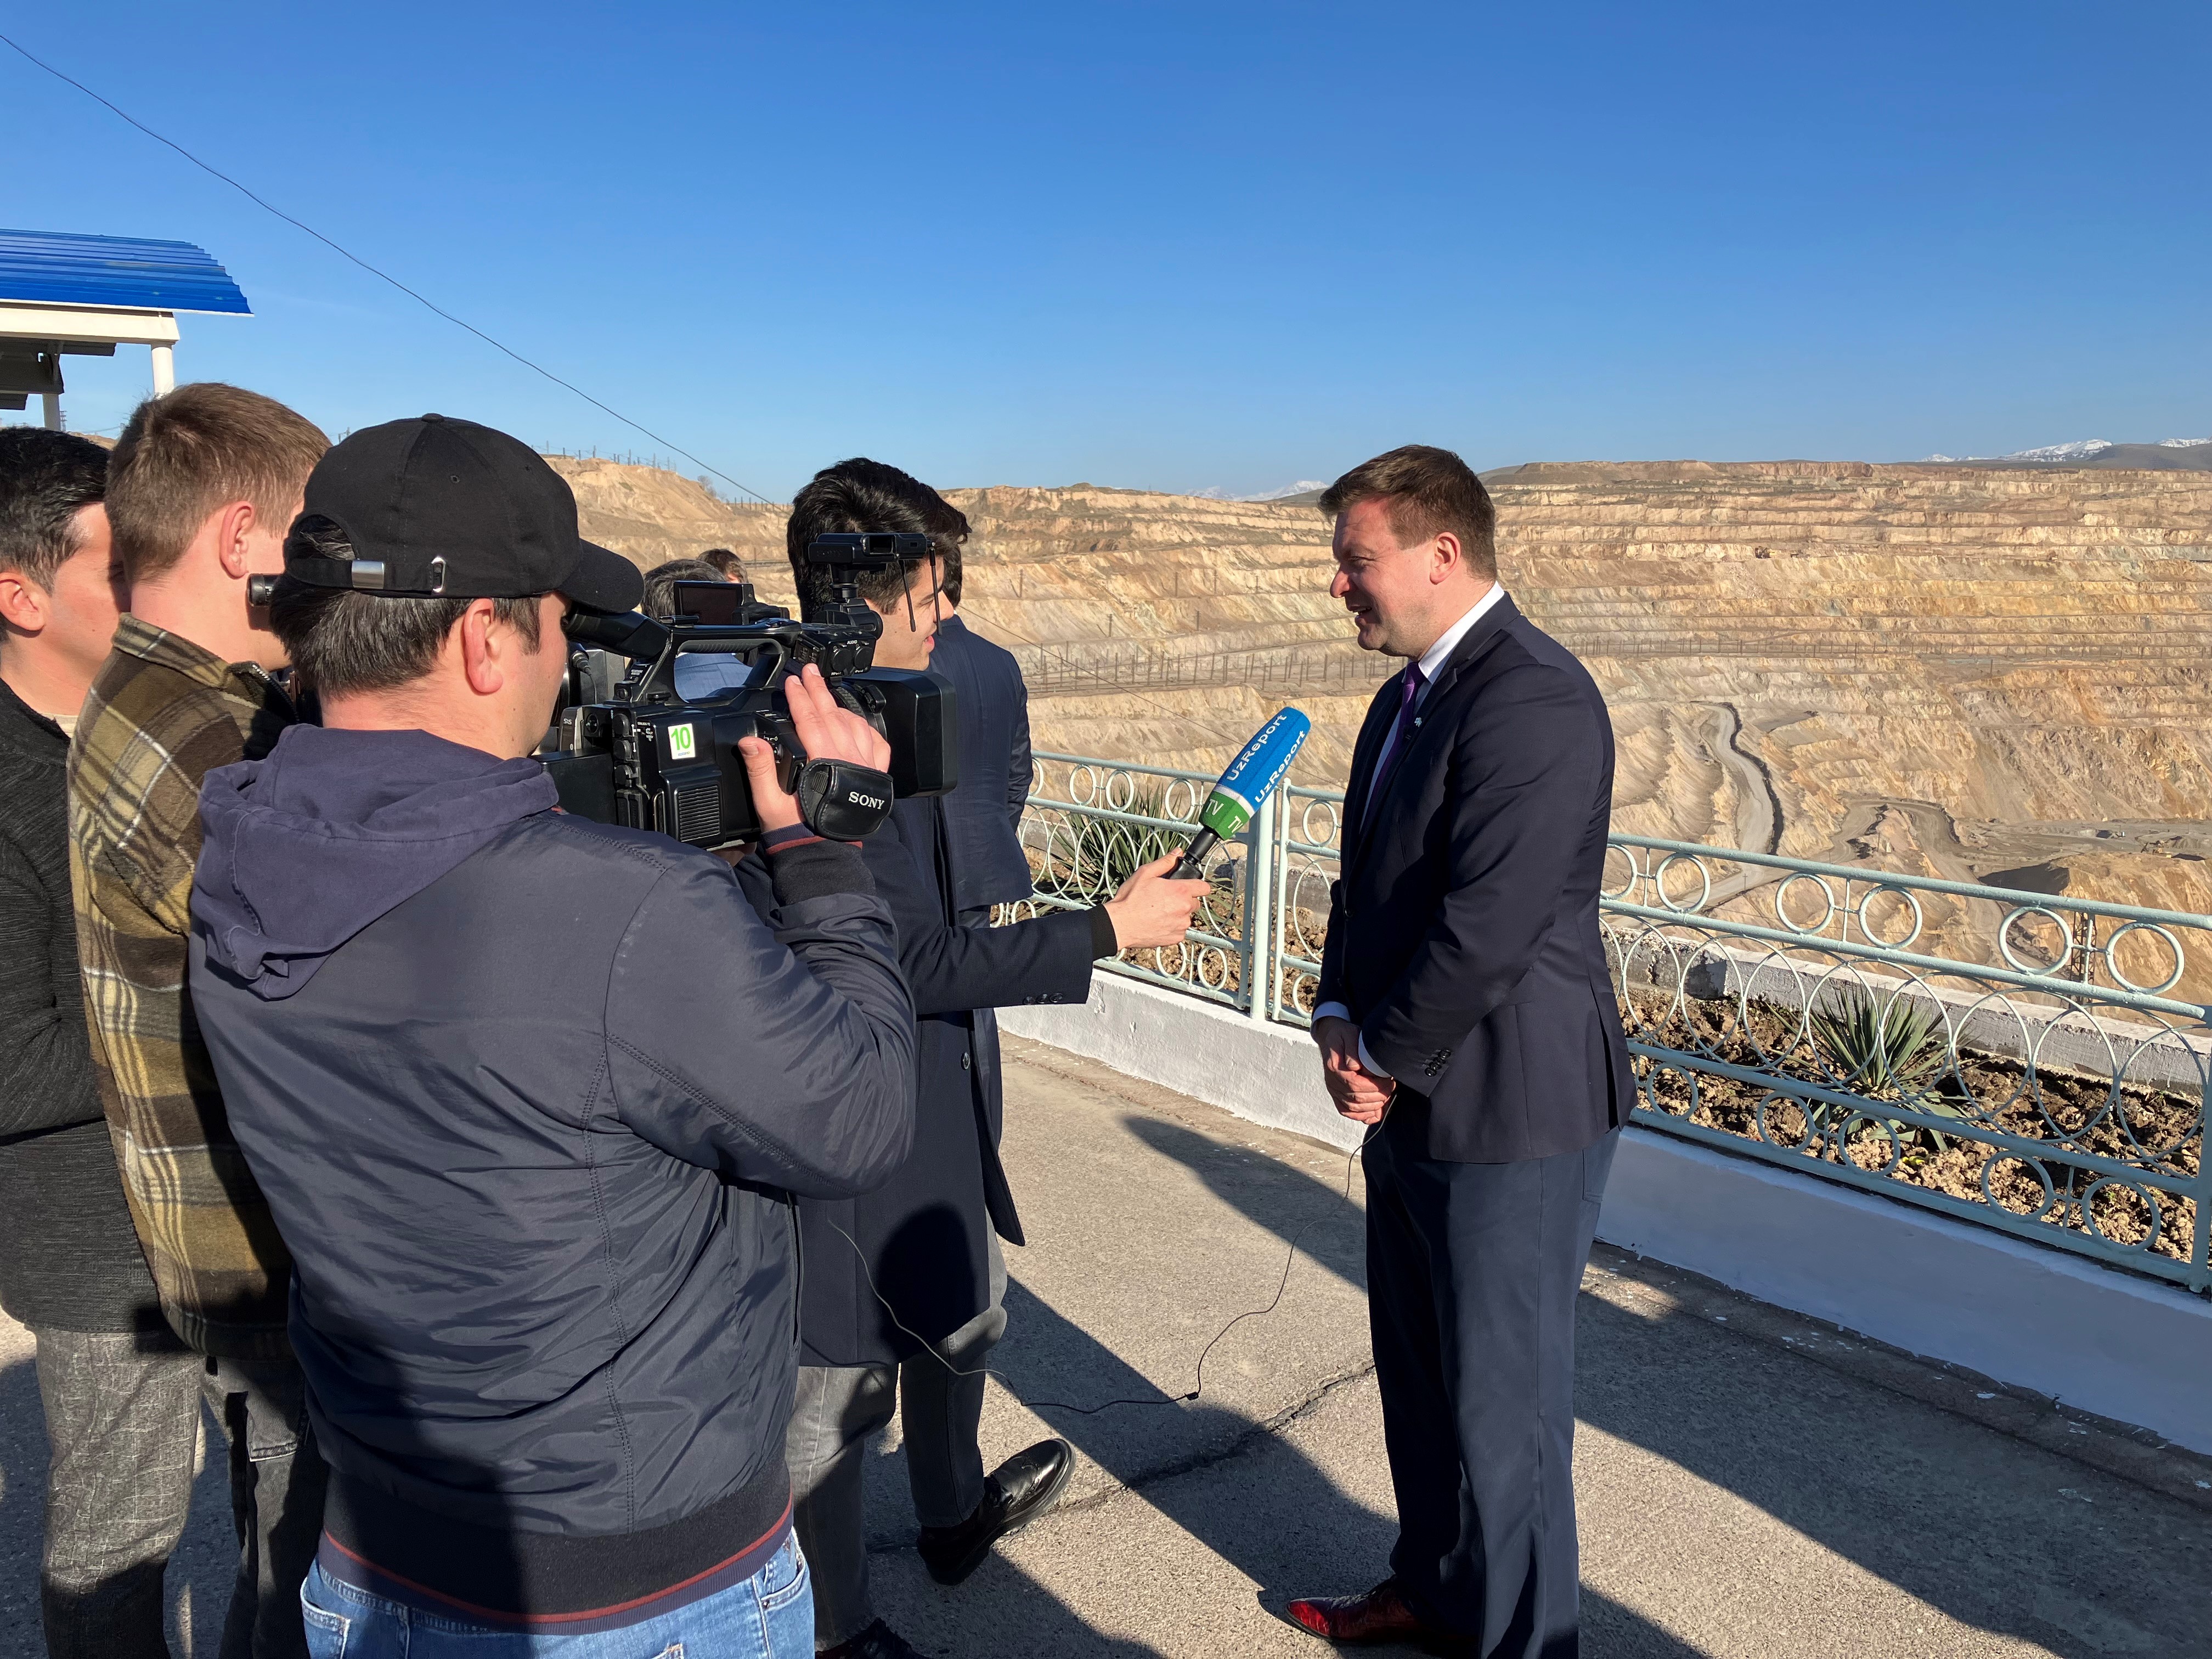 Utvecklings- och utrikeshandelsminister Ville Skinnari intervjuas av uzbekiska medier vid koppargruvan i Almalyk. Foto: Olli Nurmi